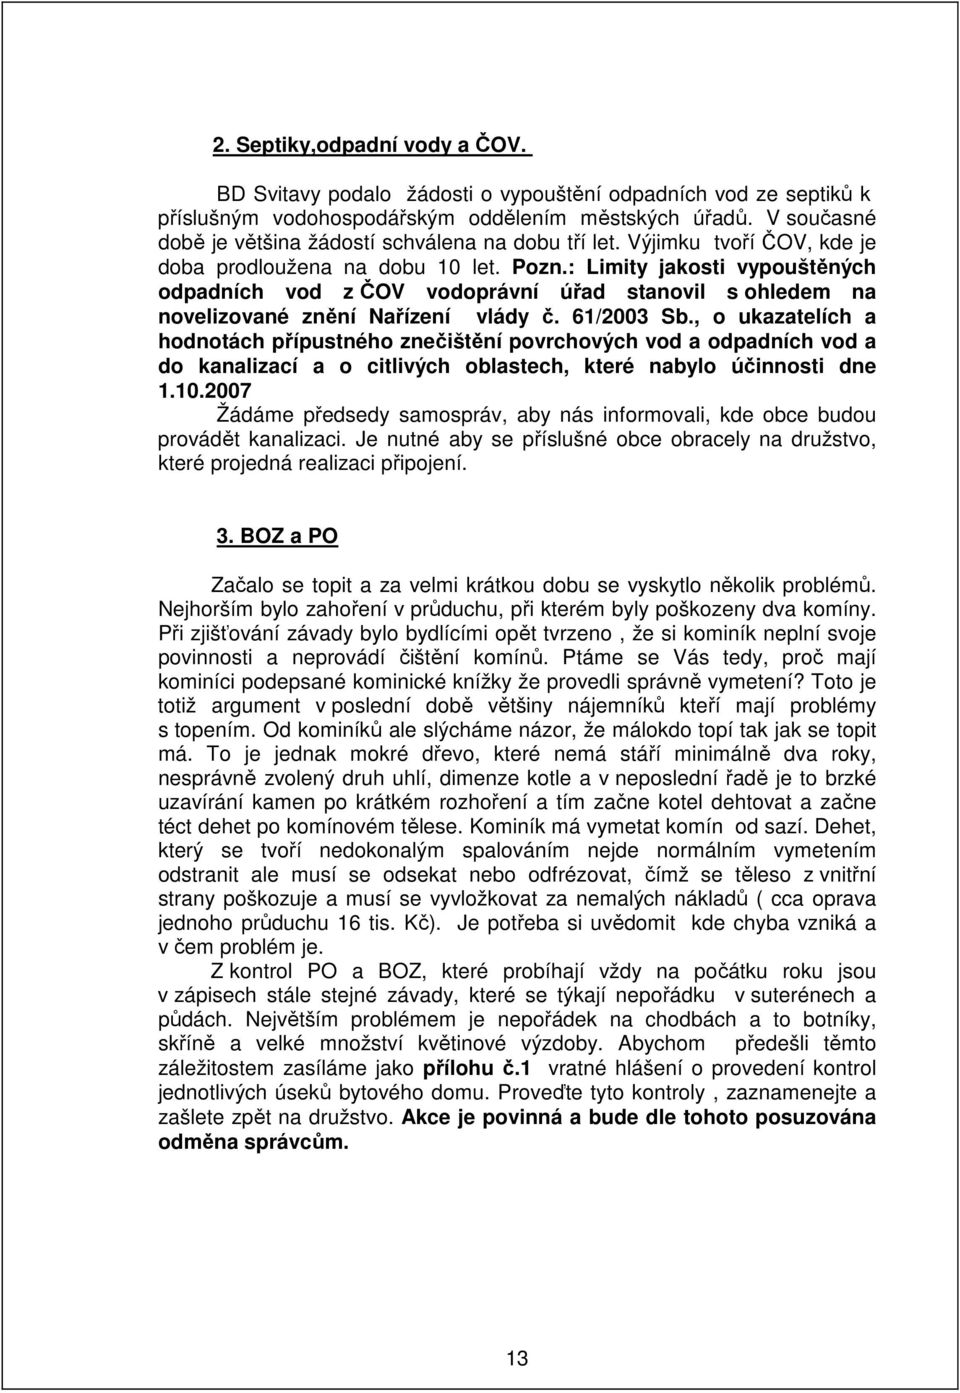 : Limity jakosti vypouštěných odpadních vod z ČOV vodoprávní úřad stanovil s ohledem na novelizované znění Nařízení vlády č. 61/2003 Sb.